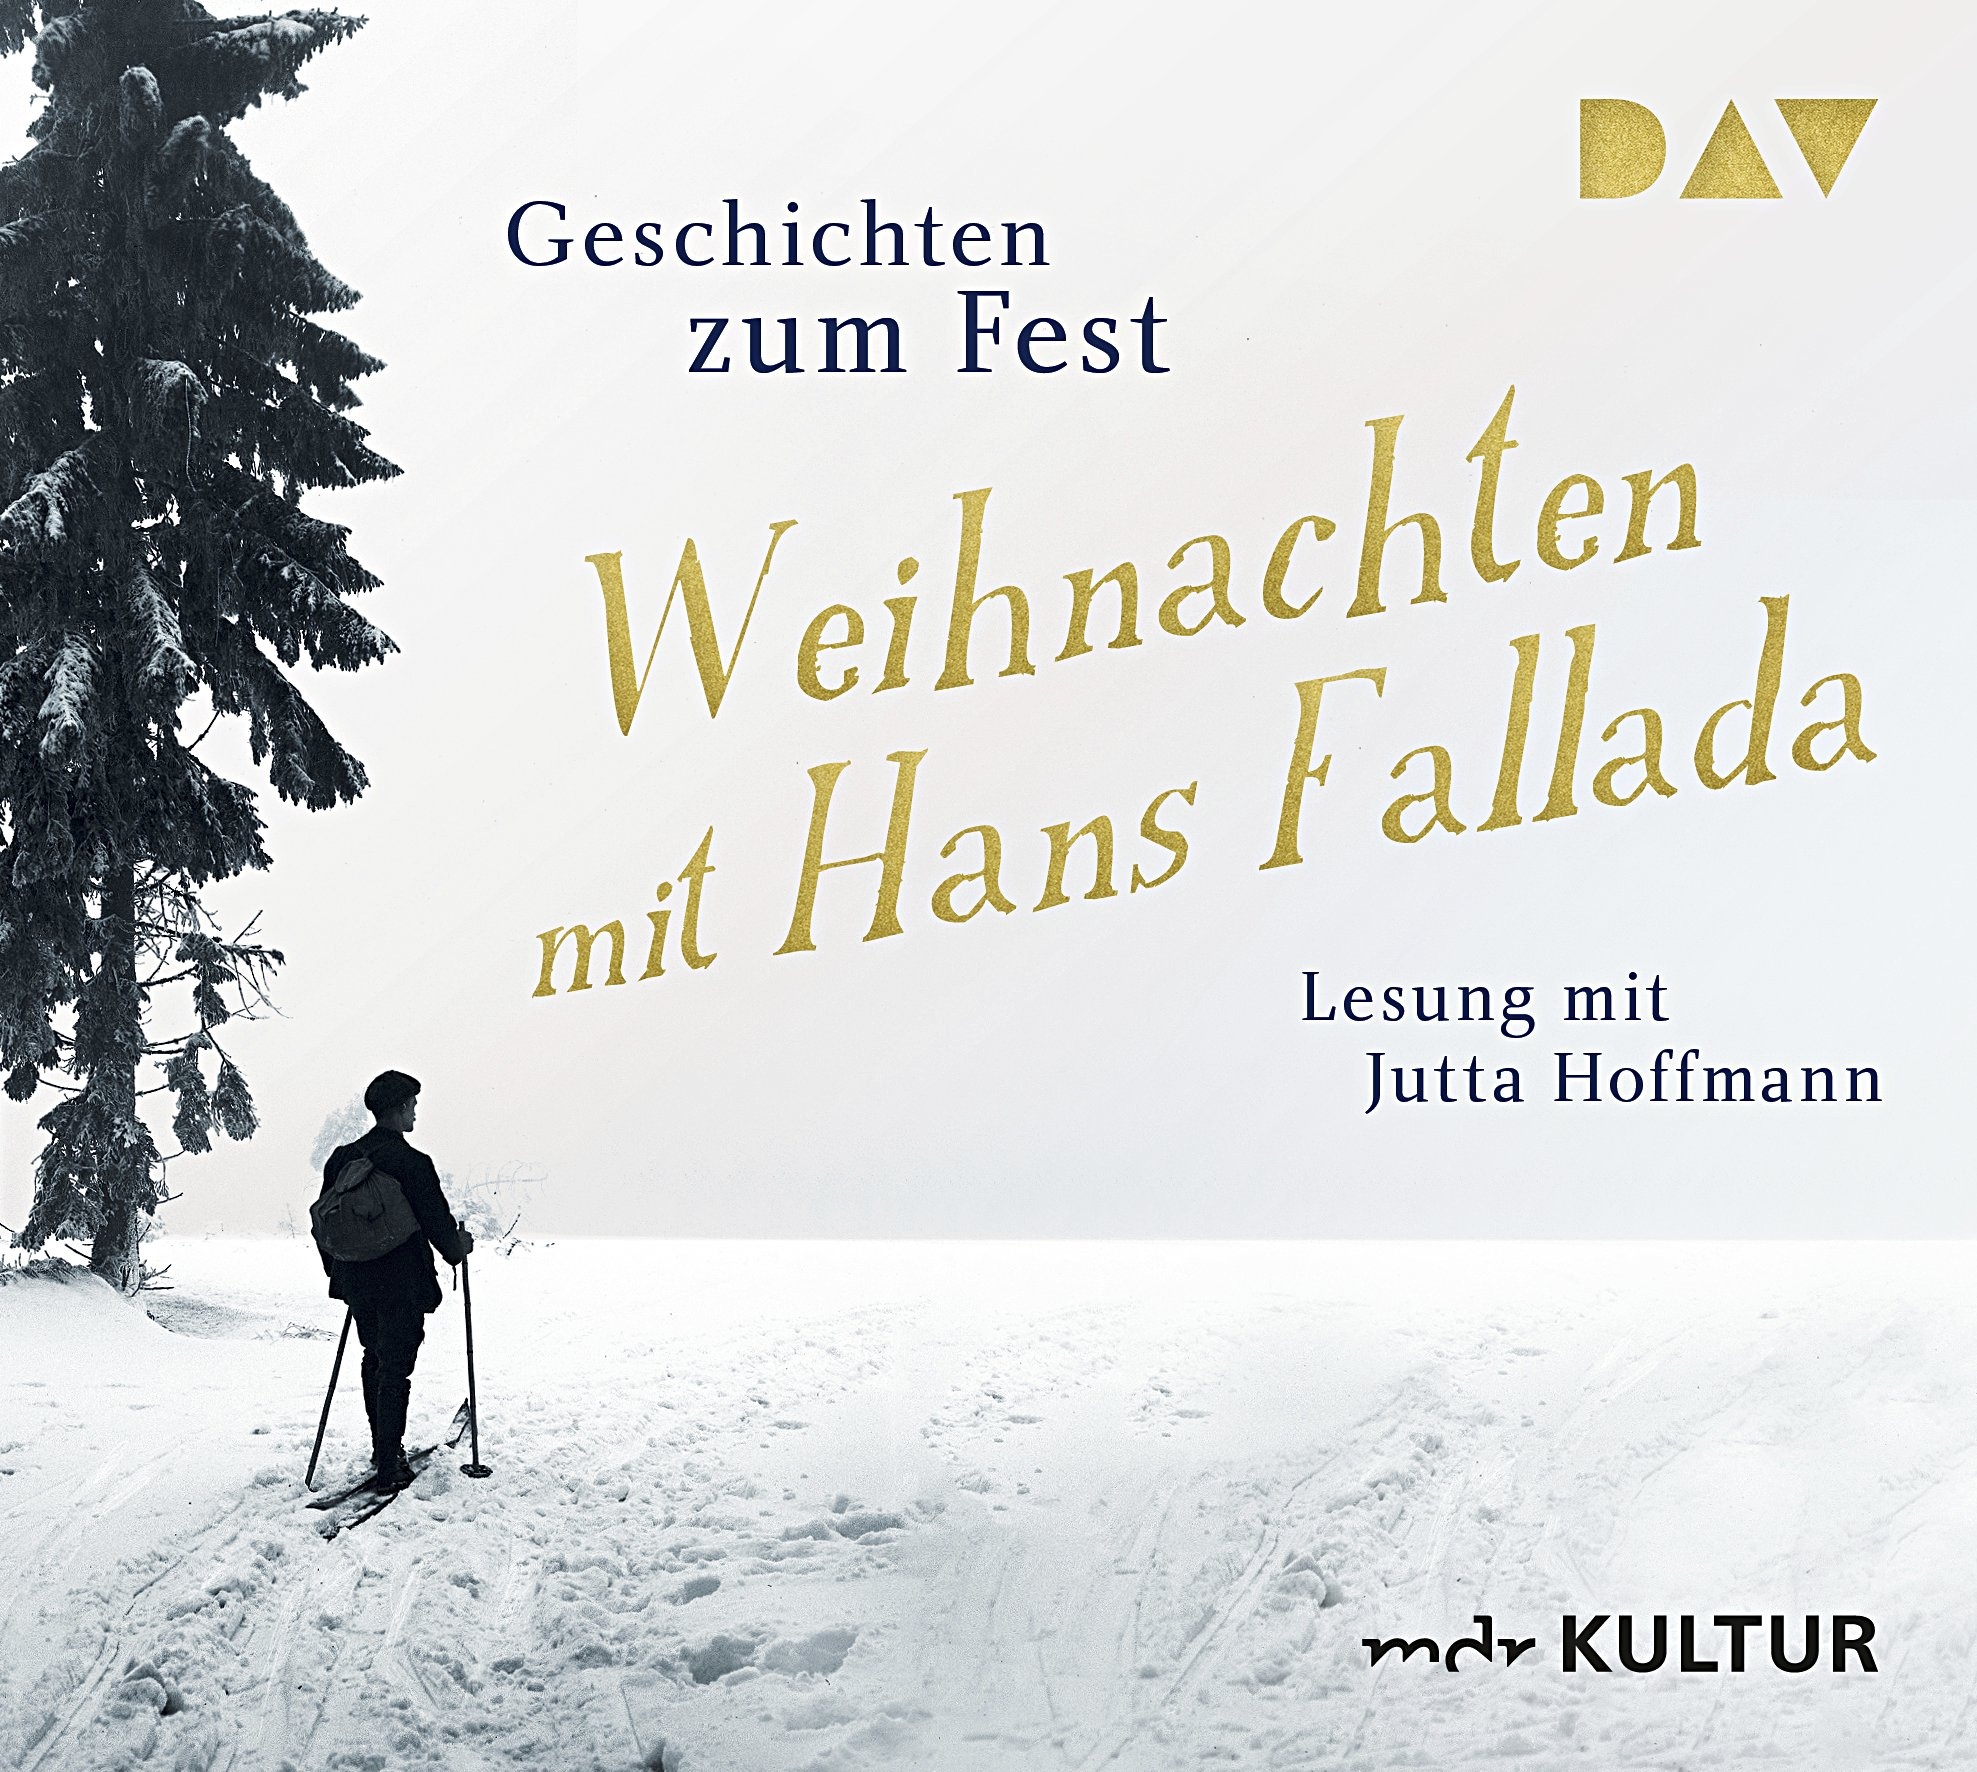 Weihnachten Mit Hans Fallada. Geschichten Zum Fest 2 Audio-Cds - Hans Fallada (Hörbuch)